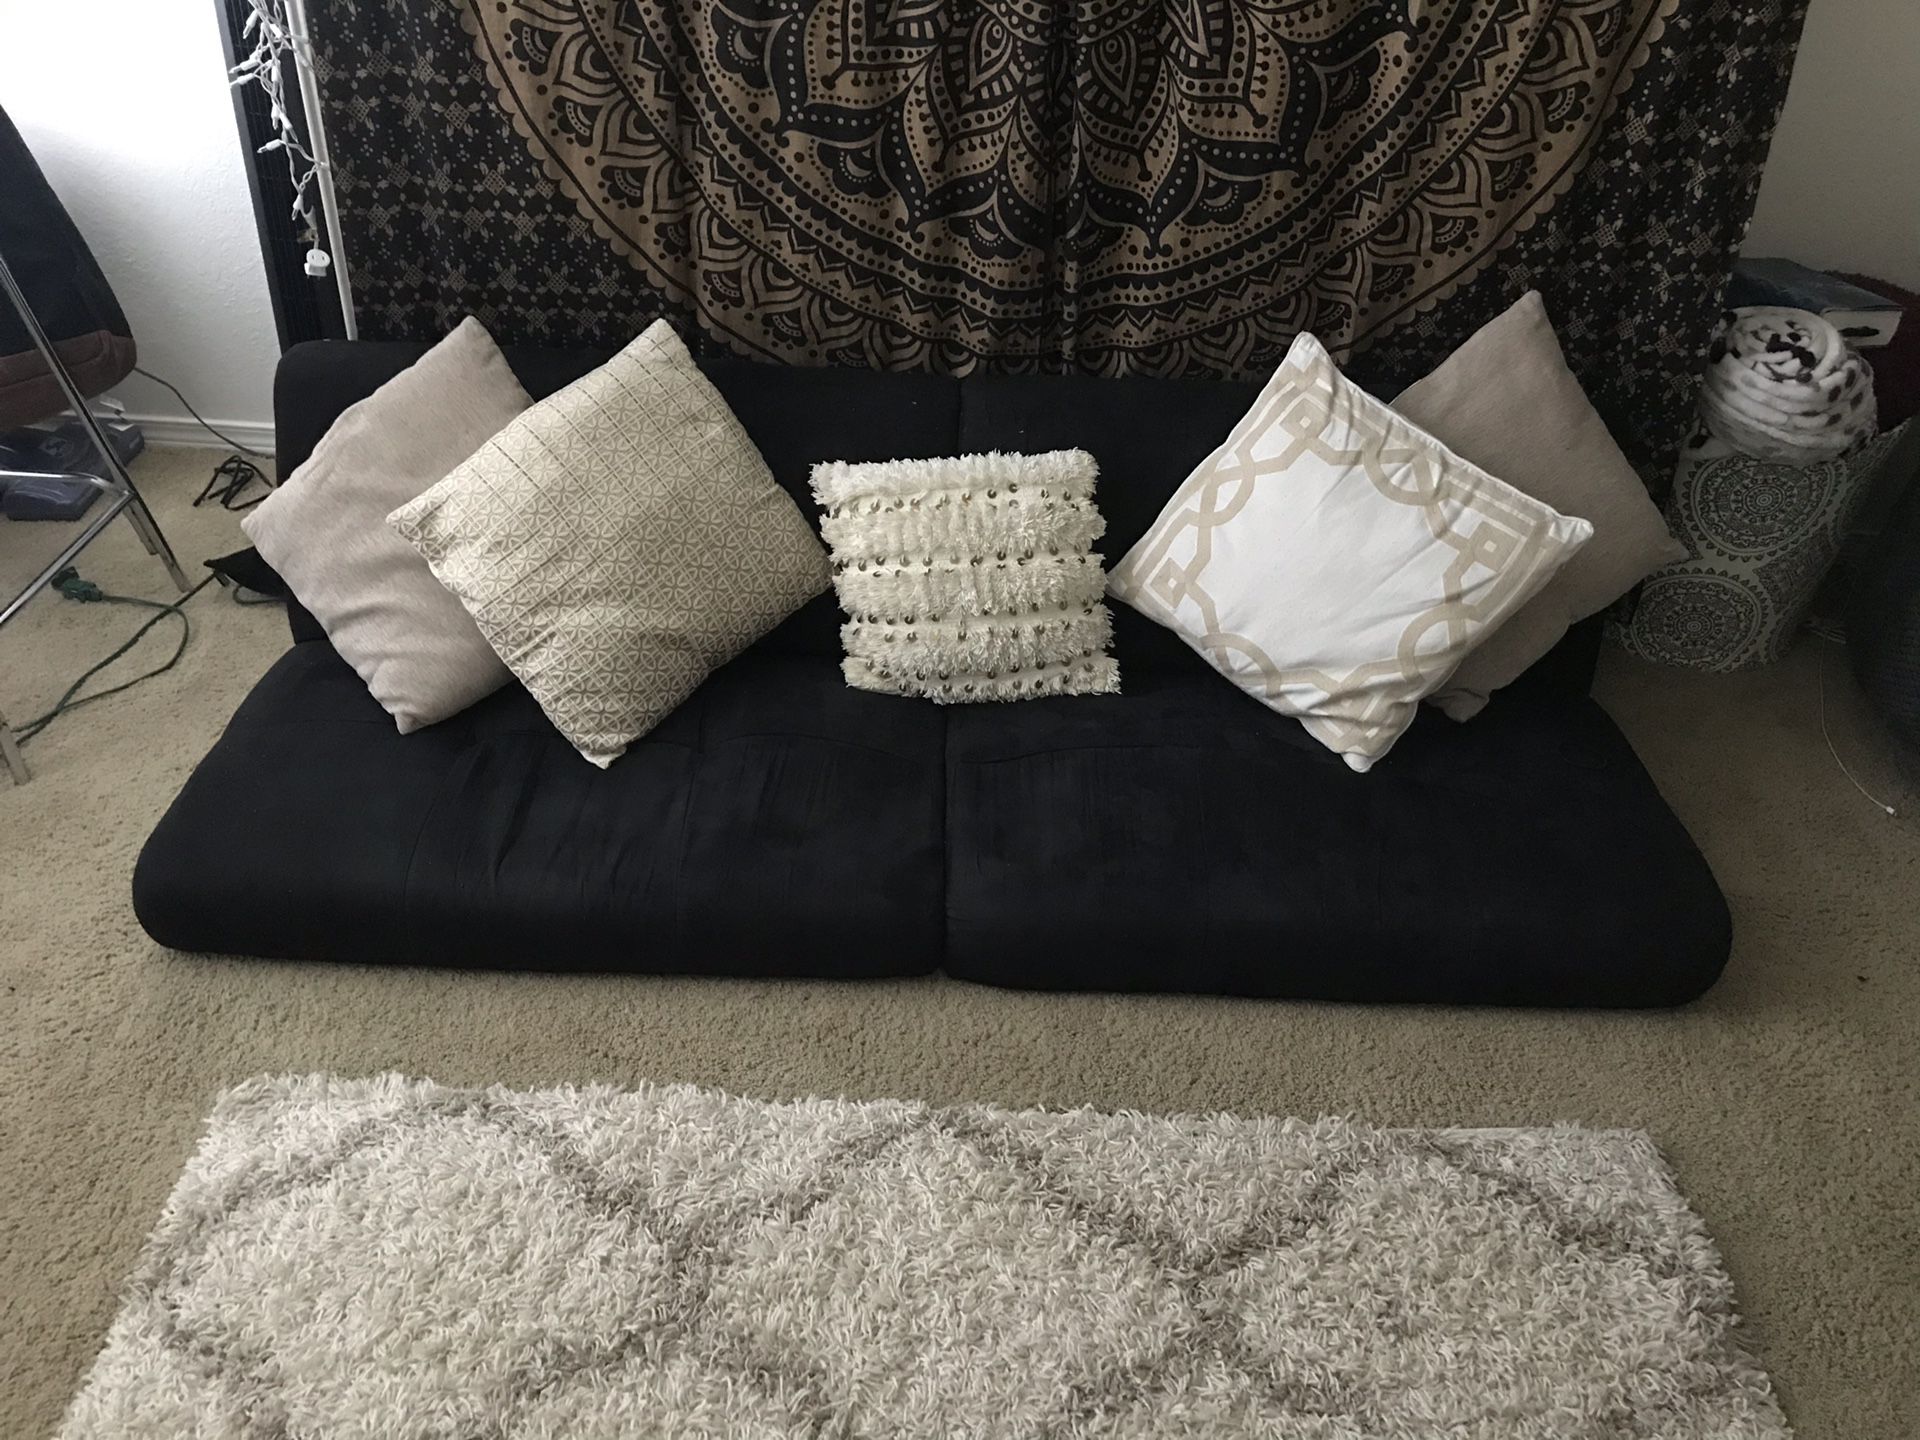 Futon sofa and throw pillows